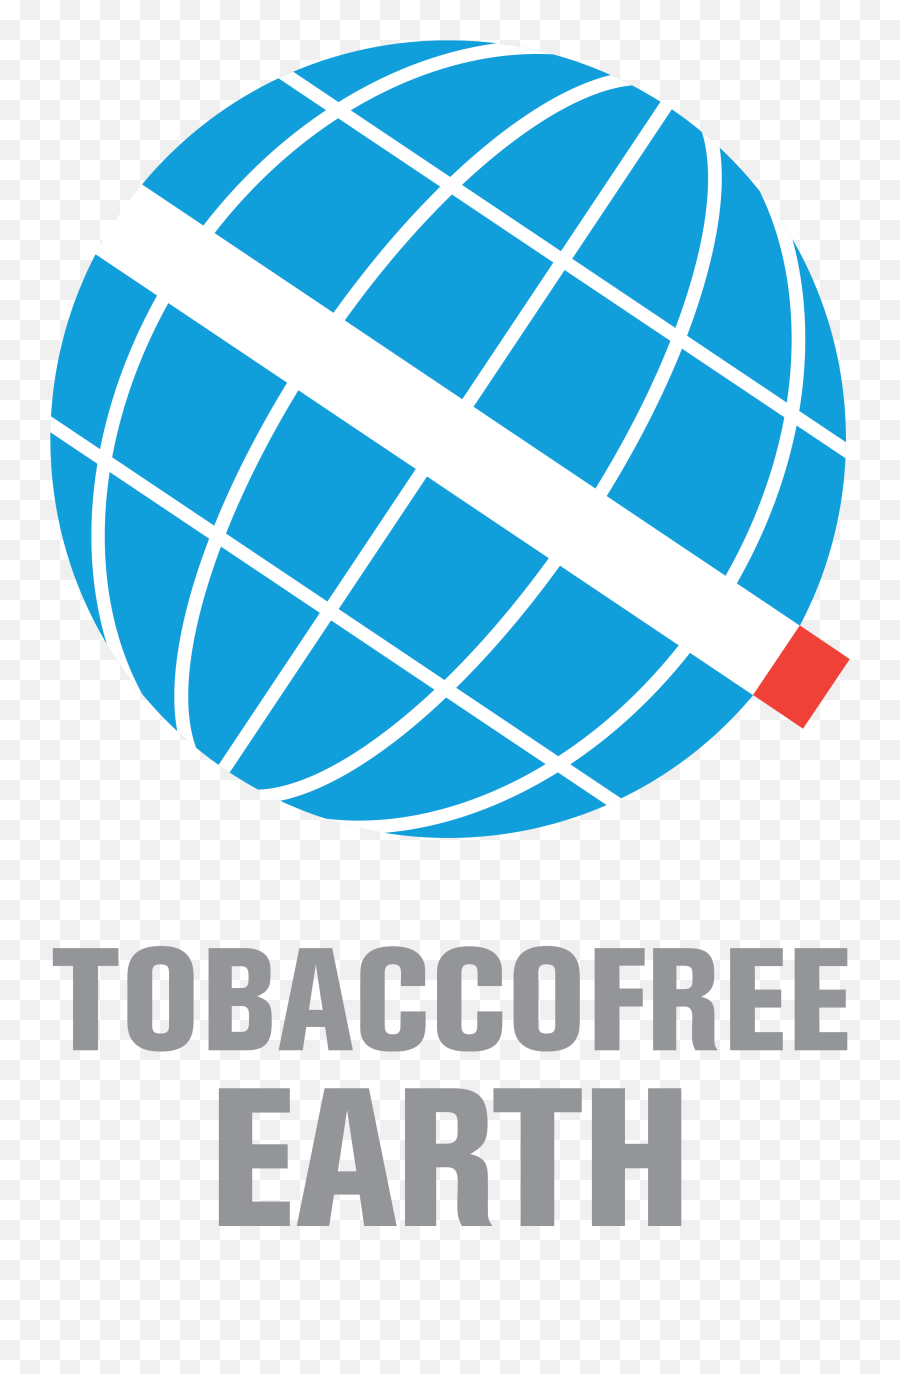 Logos Tobaccofree Earth - Best Antivaping U0026 Antismoking Tobacco Free Sign Png,Major Credit Card Logos